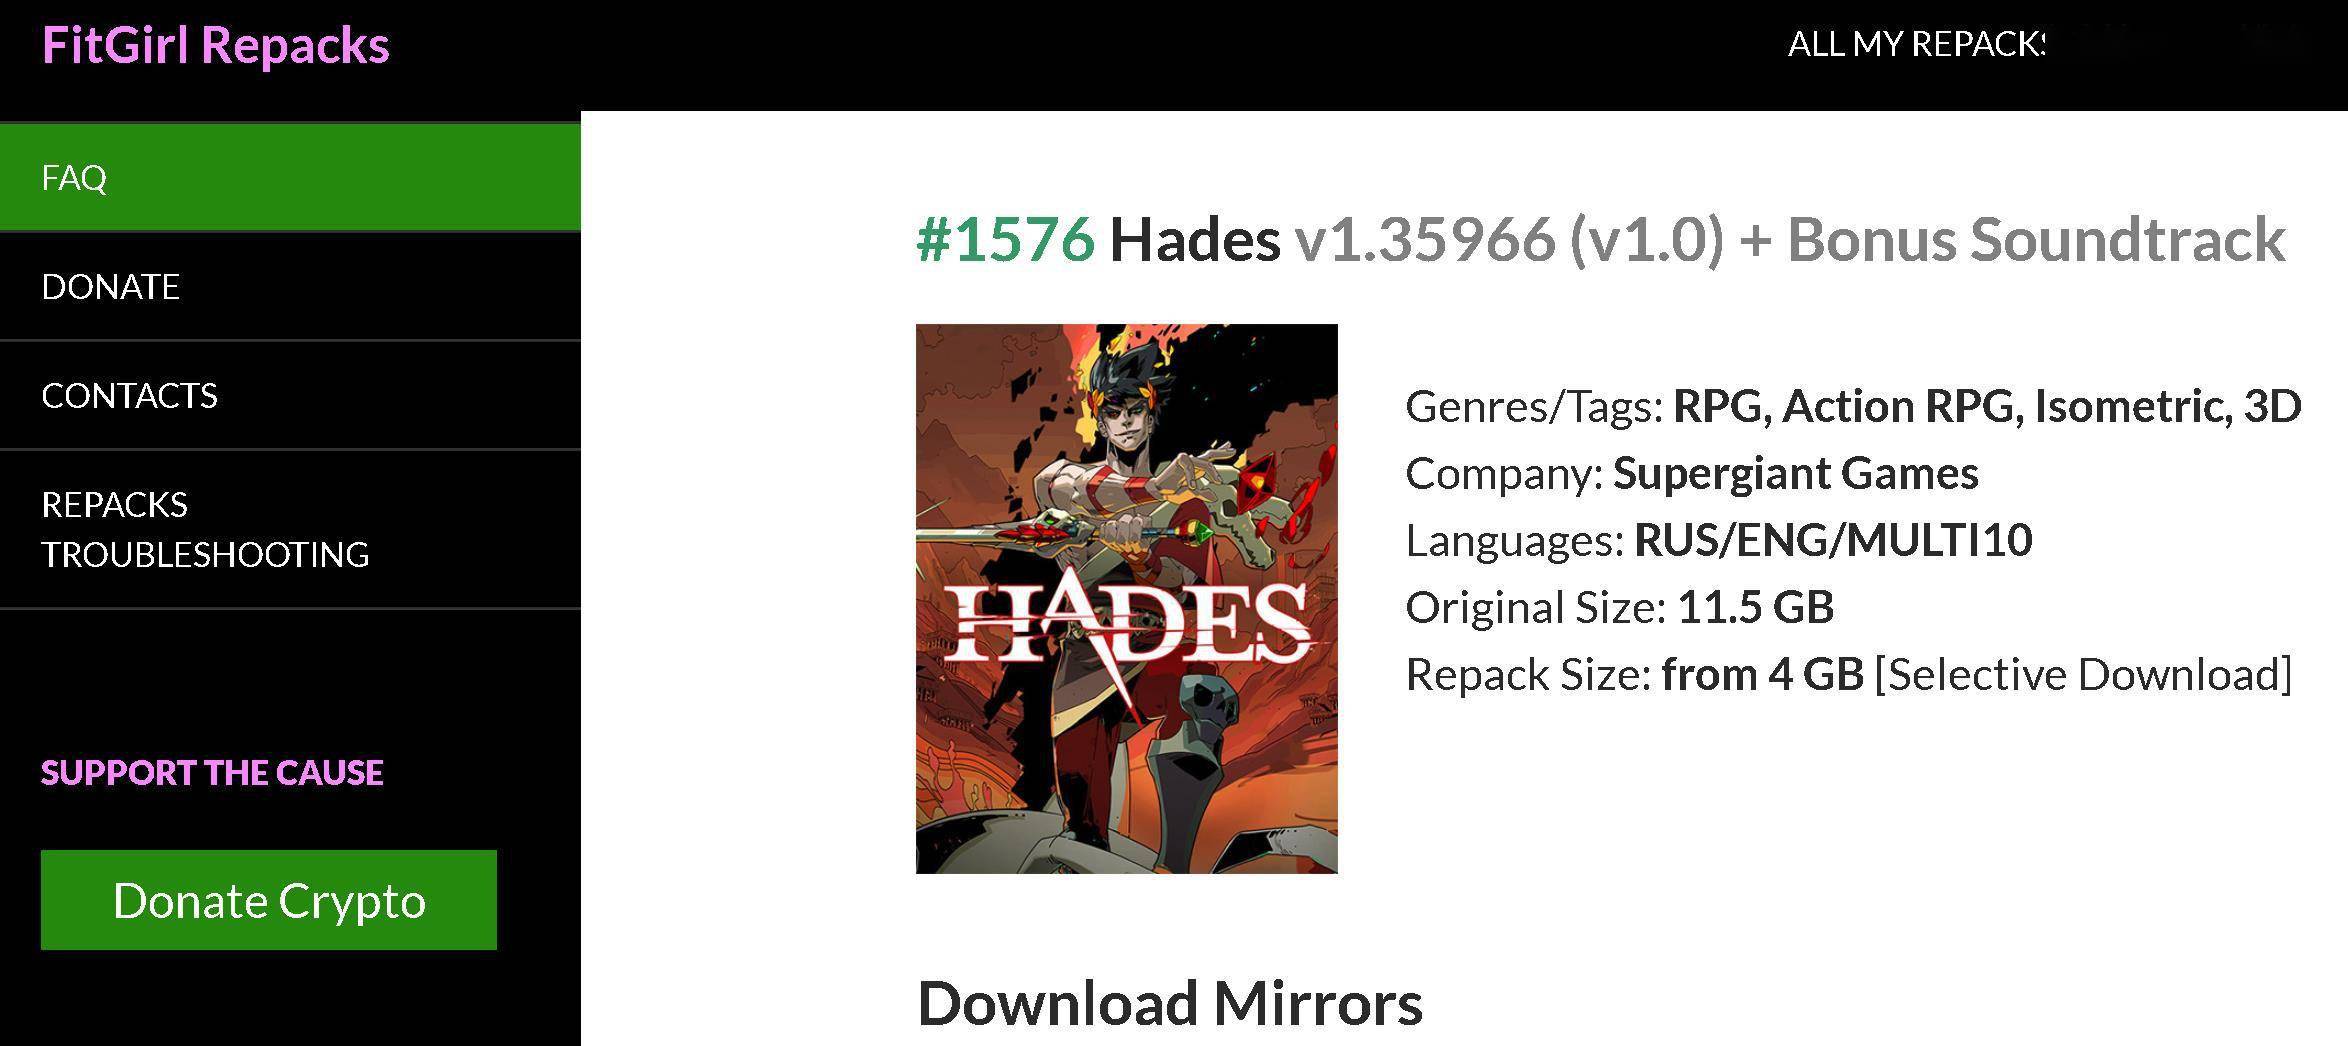 Hades (v1.35966/v1.0 + Bonus Soundtrack, MULTi10) [FitGirl Repack